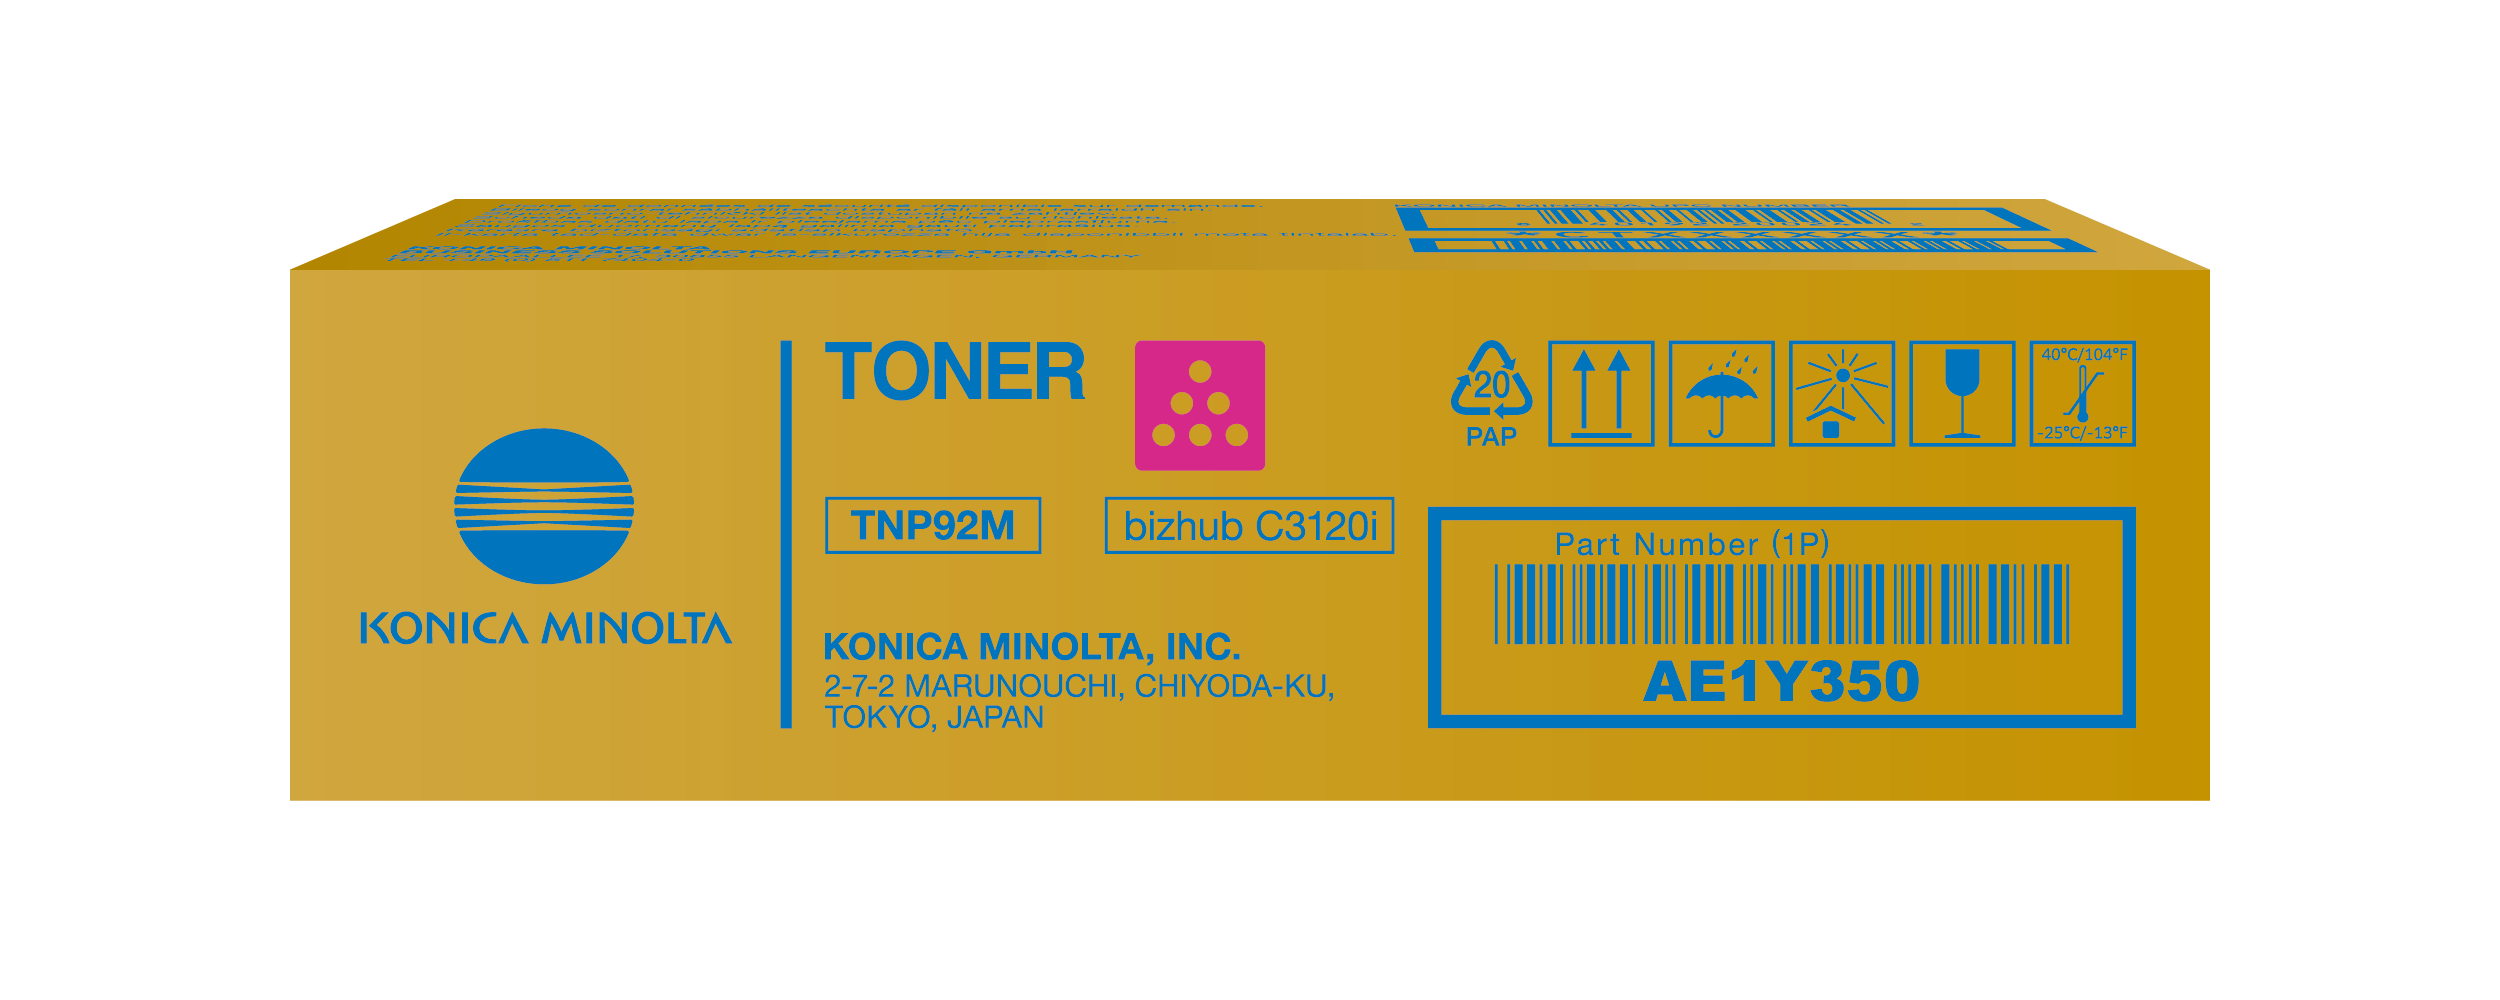 Toner Magenta for bizhub C3120i - TNP92M